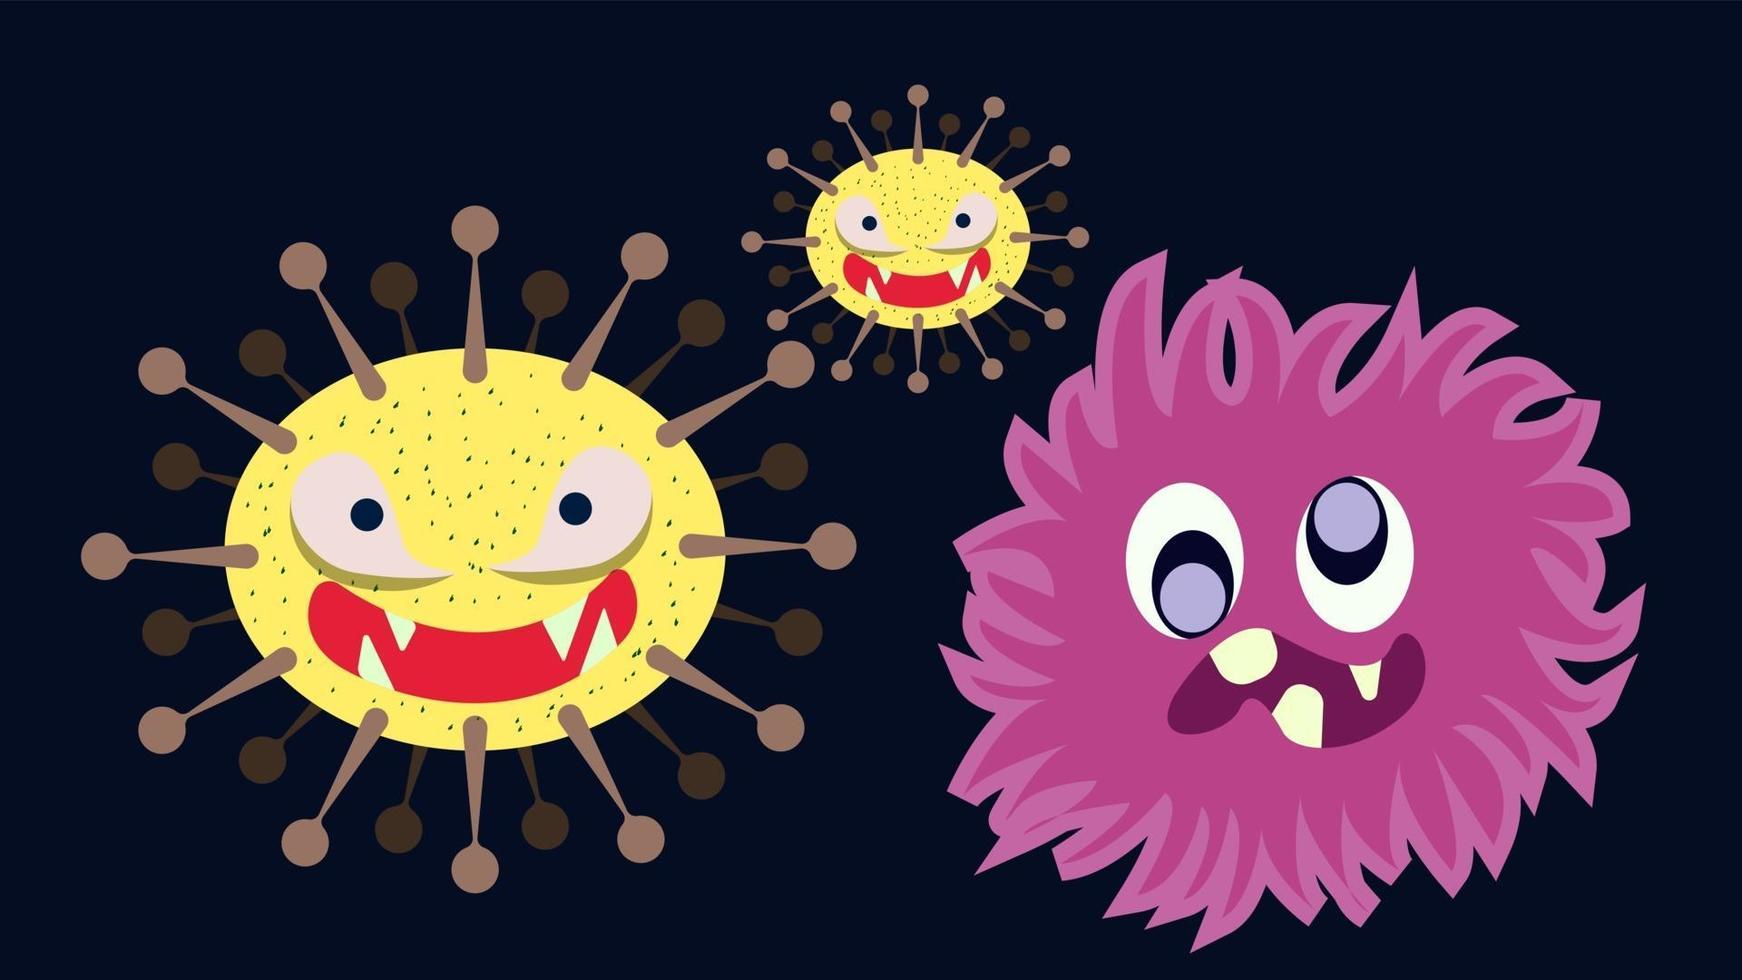 ilustração vetorial gráfico do personagem bonito de coleção definida de germe, bactéria e vírus. micróbio, patógeno, ícone de vírus. micróbios dos desenhos animados. germe bonito dos desenhos animados no design de estilo simples. vetor eps10.